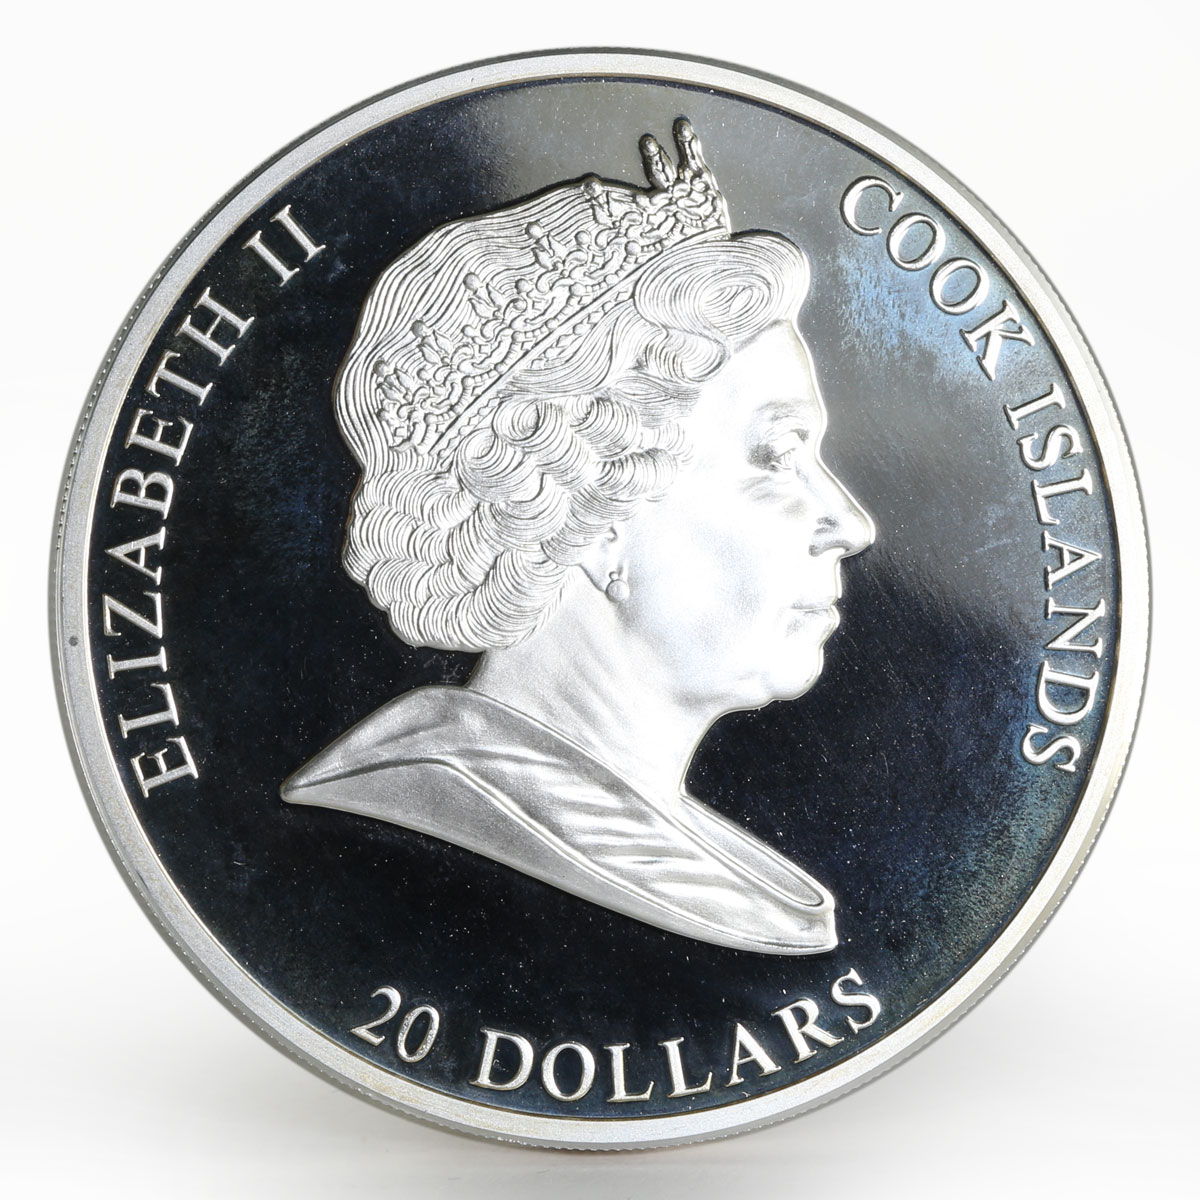 Cook Islands 20 dollars Viktor Vasnetsov Three Bogatyrs proof silver coin 2010